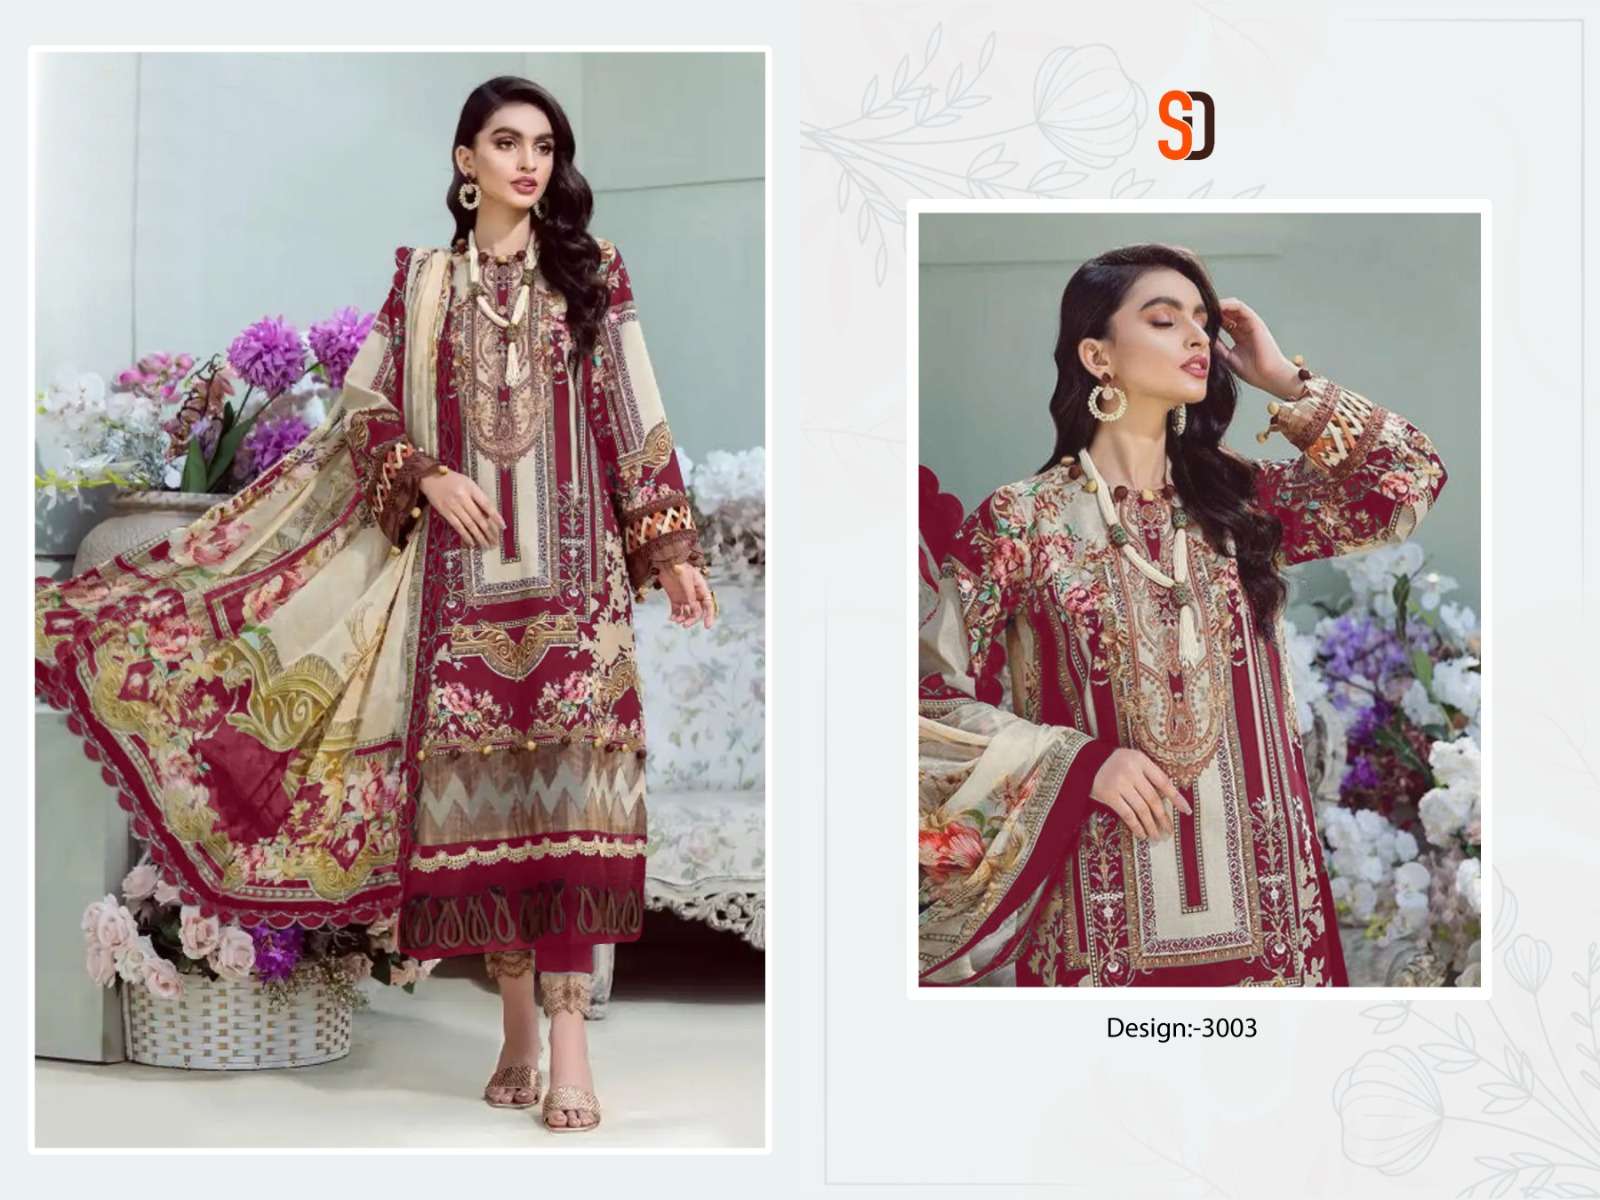 Sharaddha Bliss Vol 3 Chiffon Dupatta Pakistani Suits Wholesale catalog